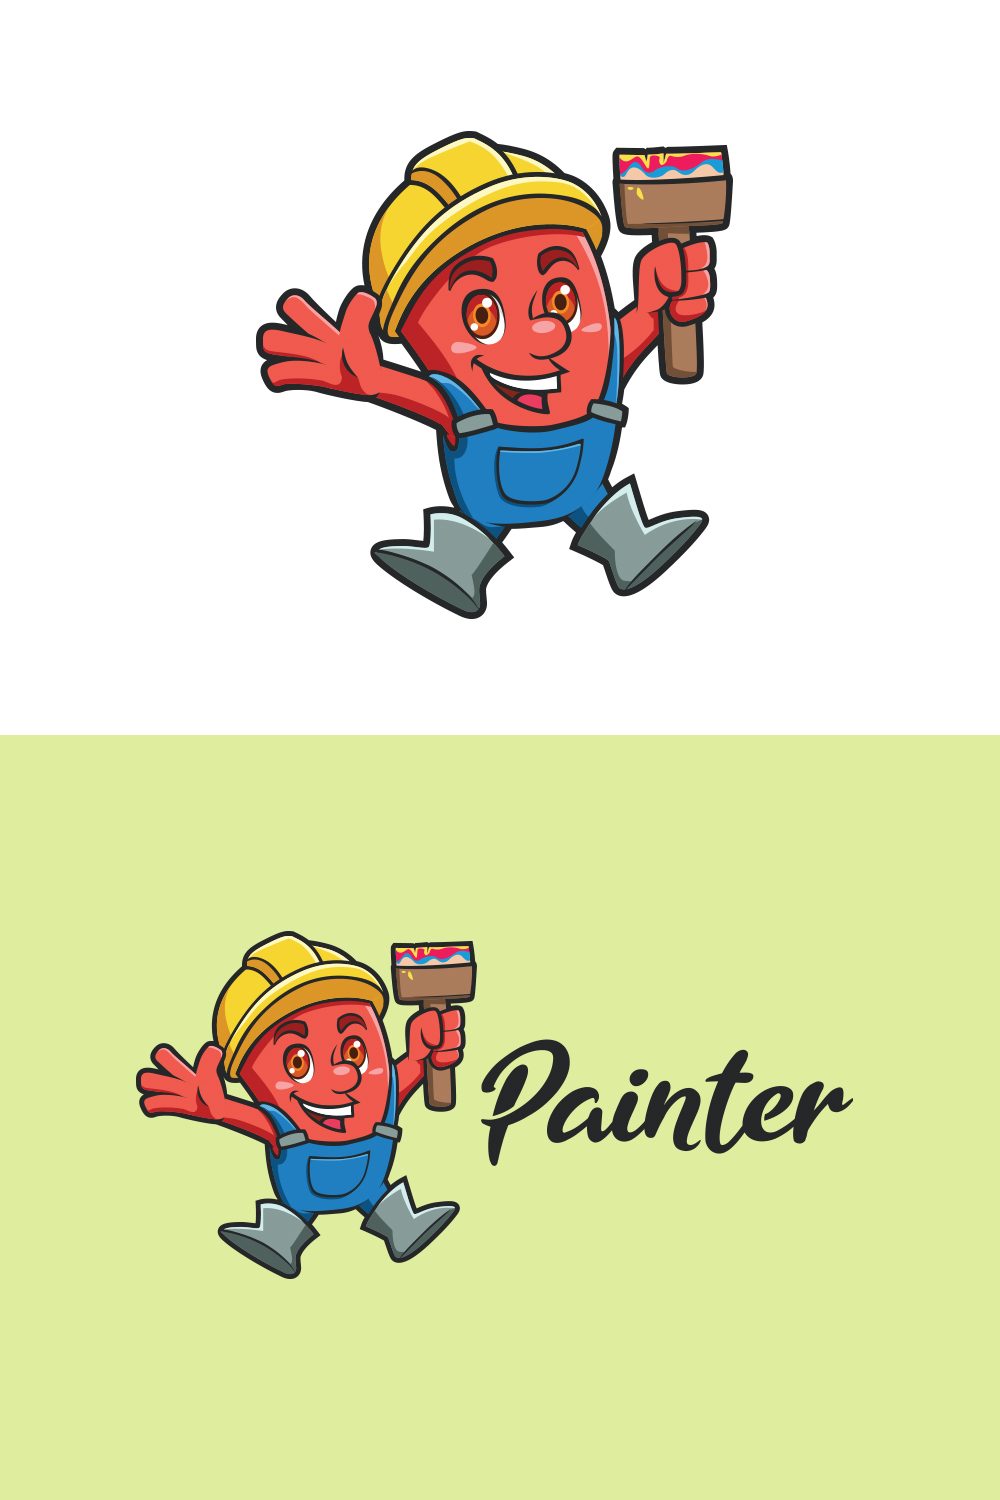 Monster Painter Mascot Logo Design pinterest preview image.